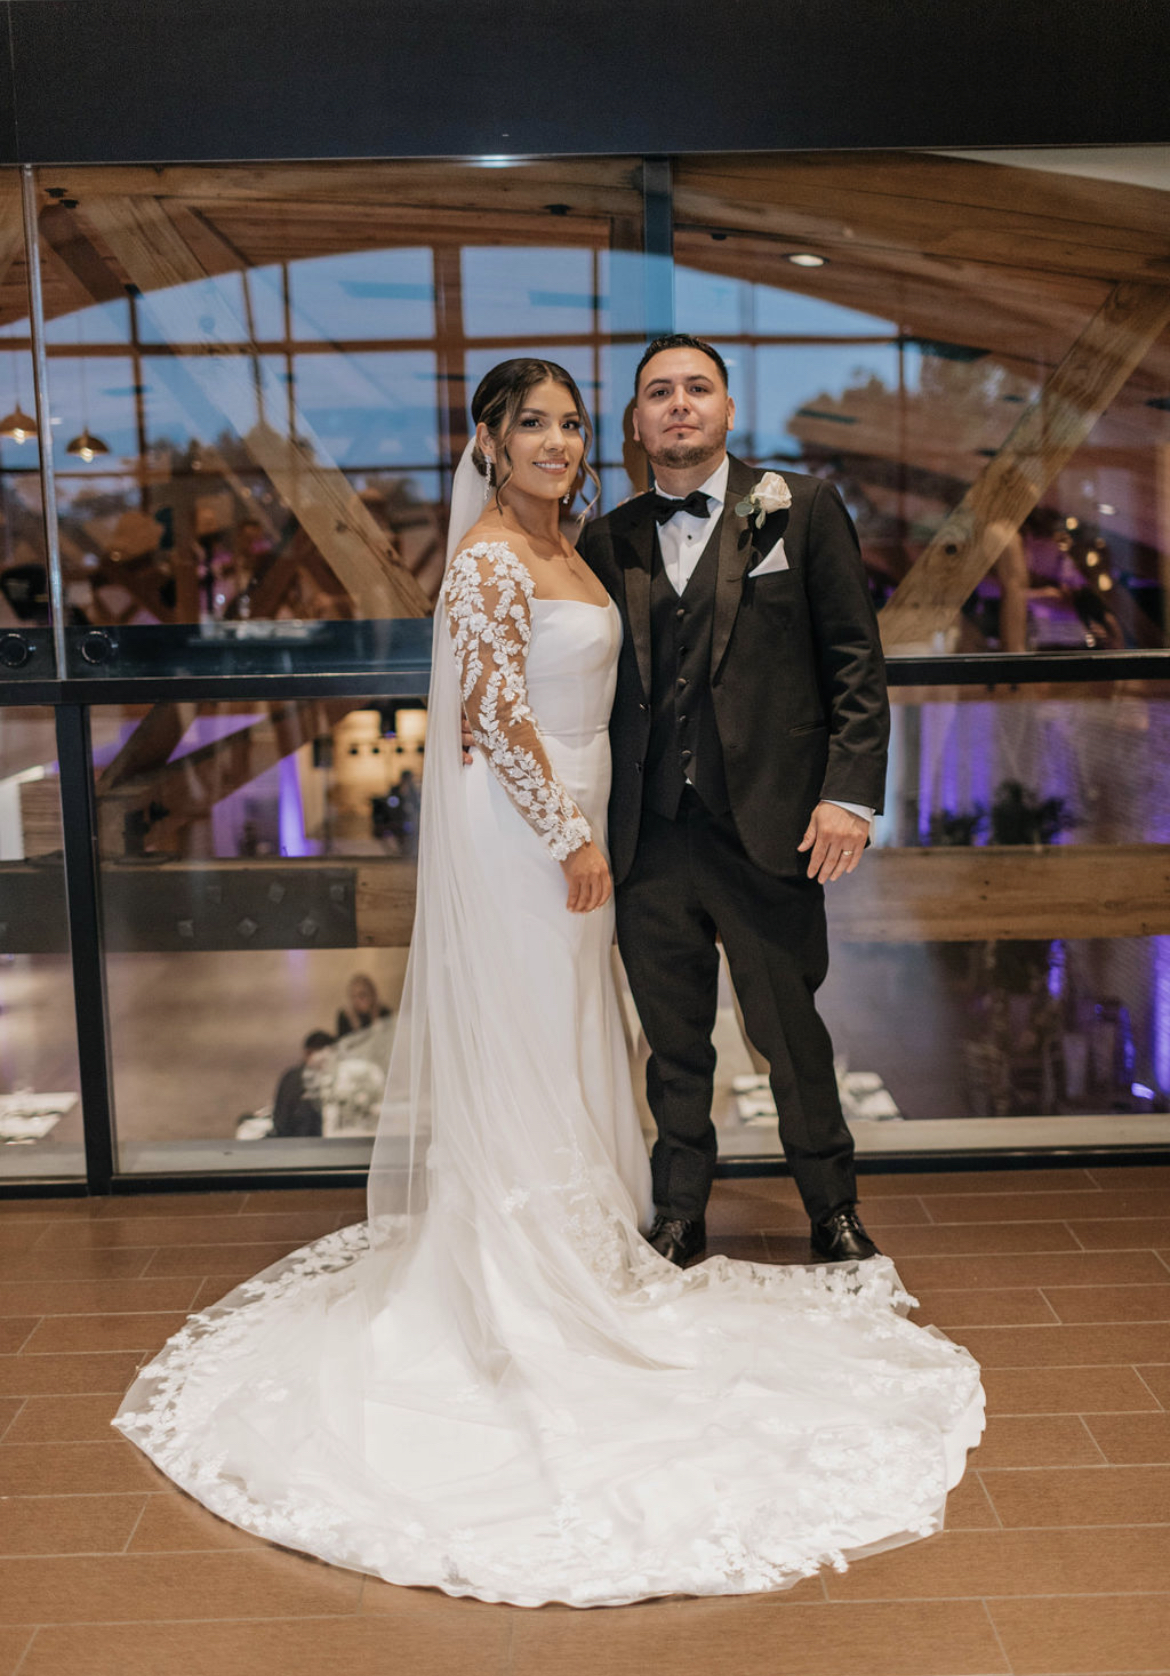 Jennifer and Javier’s Wedding Ceremony